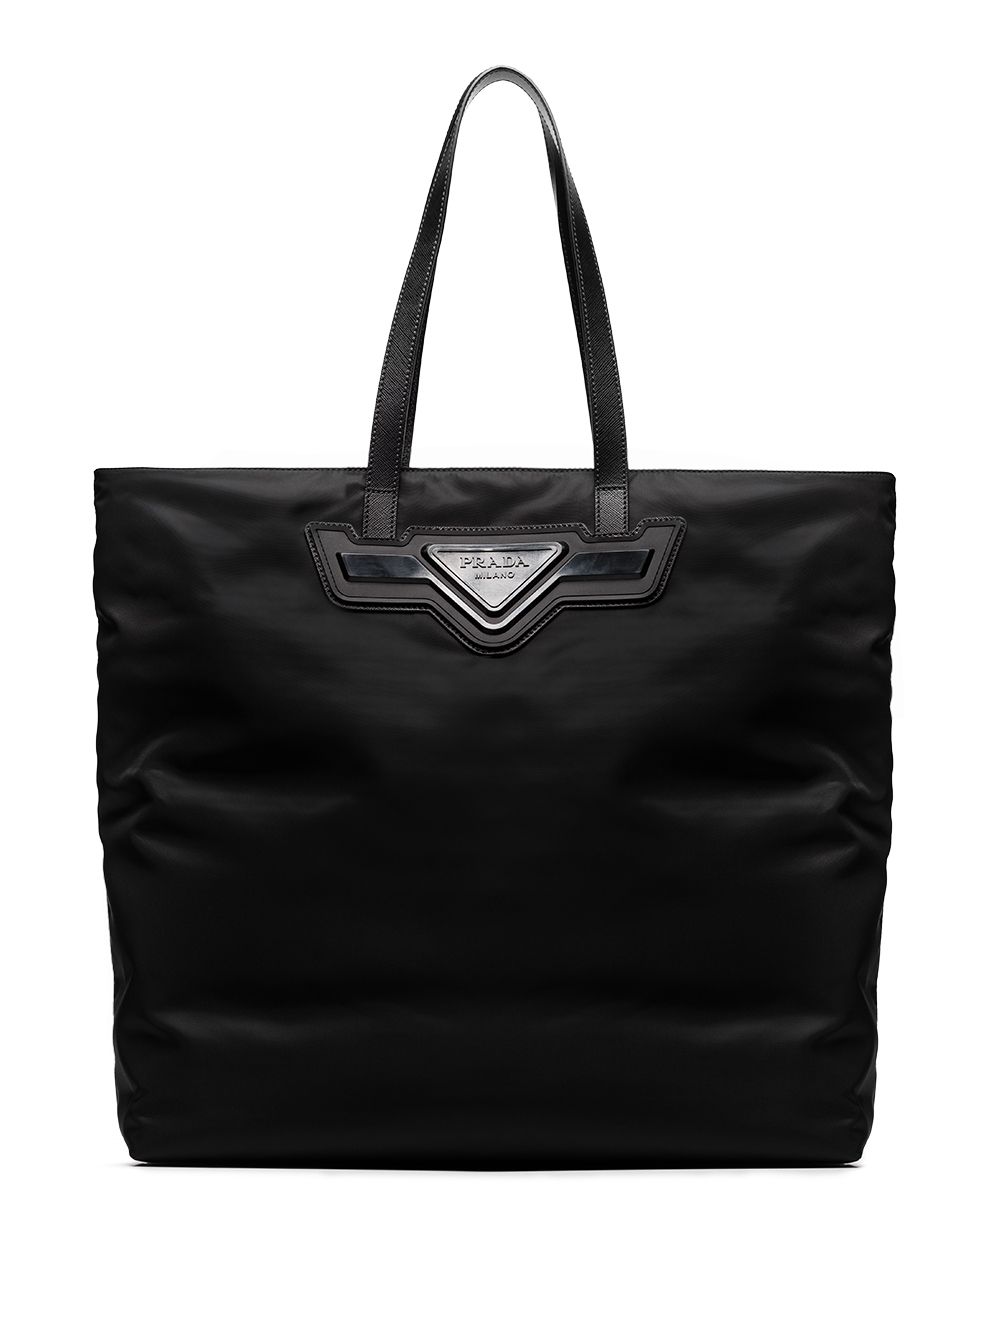 фото Prada сумка-тоут с логотипом